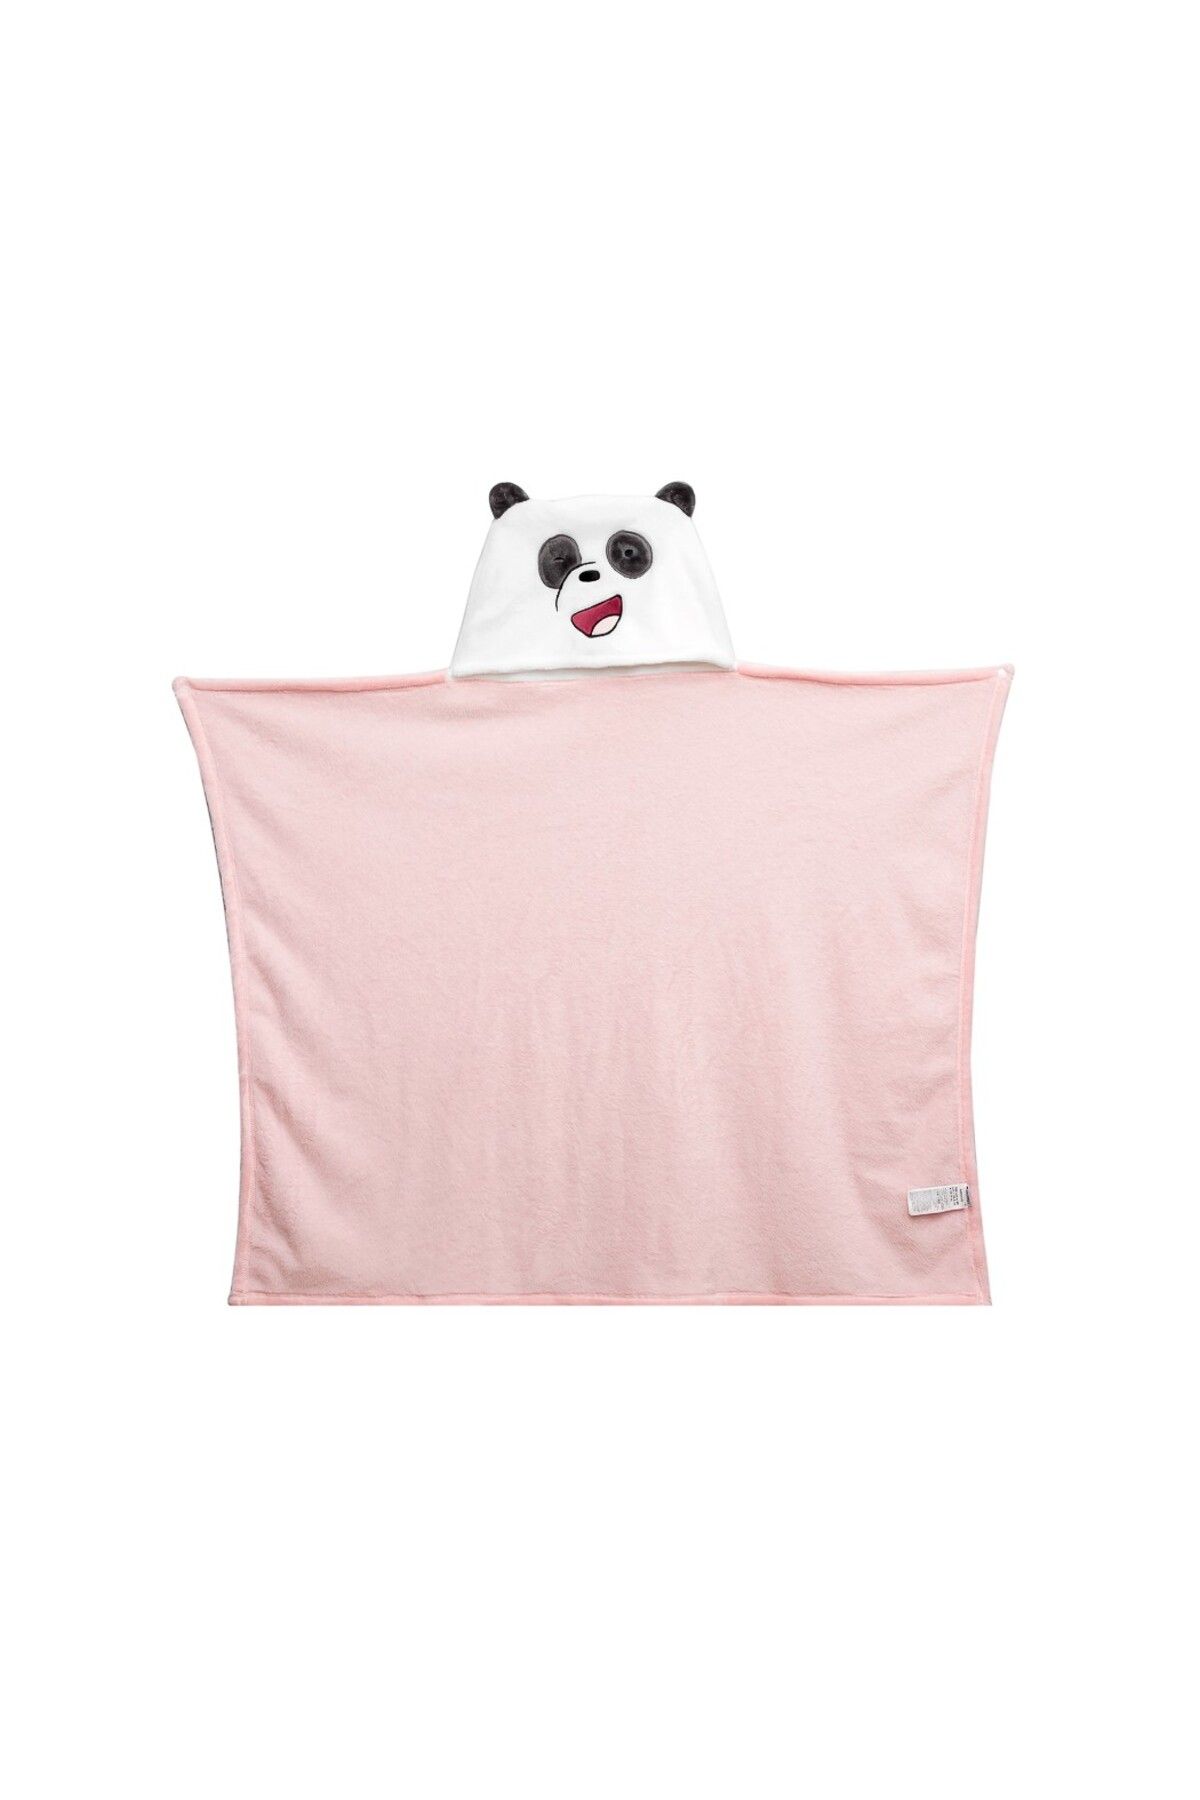 Miniso We Bare Bears Lisanslı Kontrast Renkli Katlanabilir Battaniye